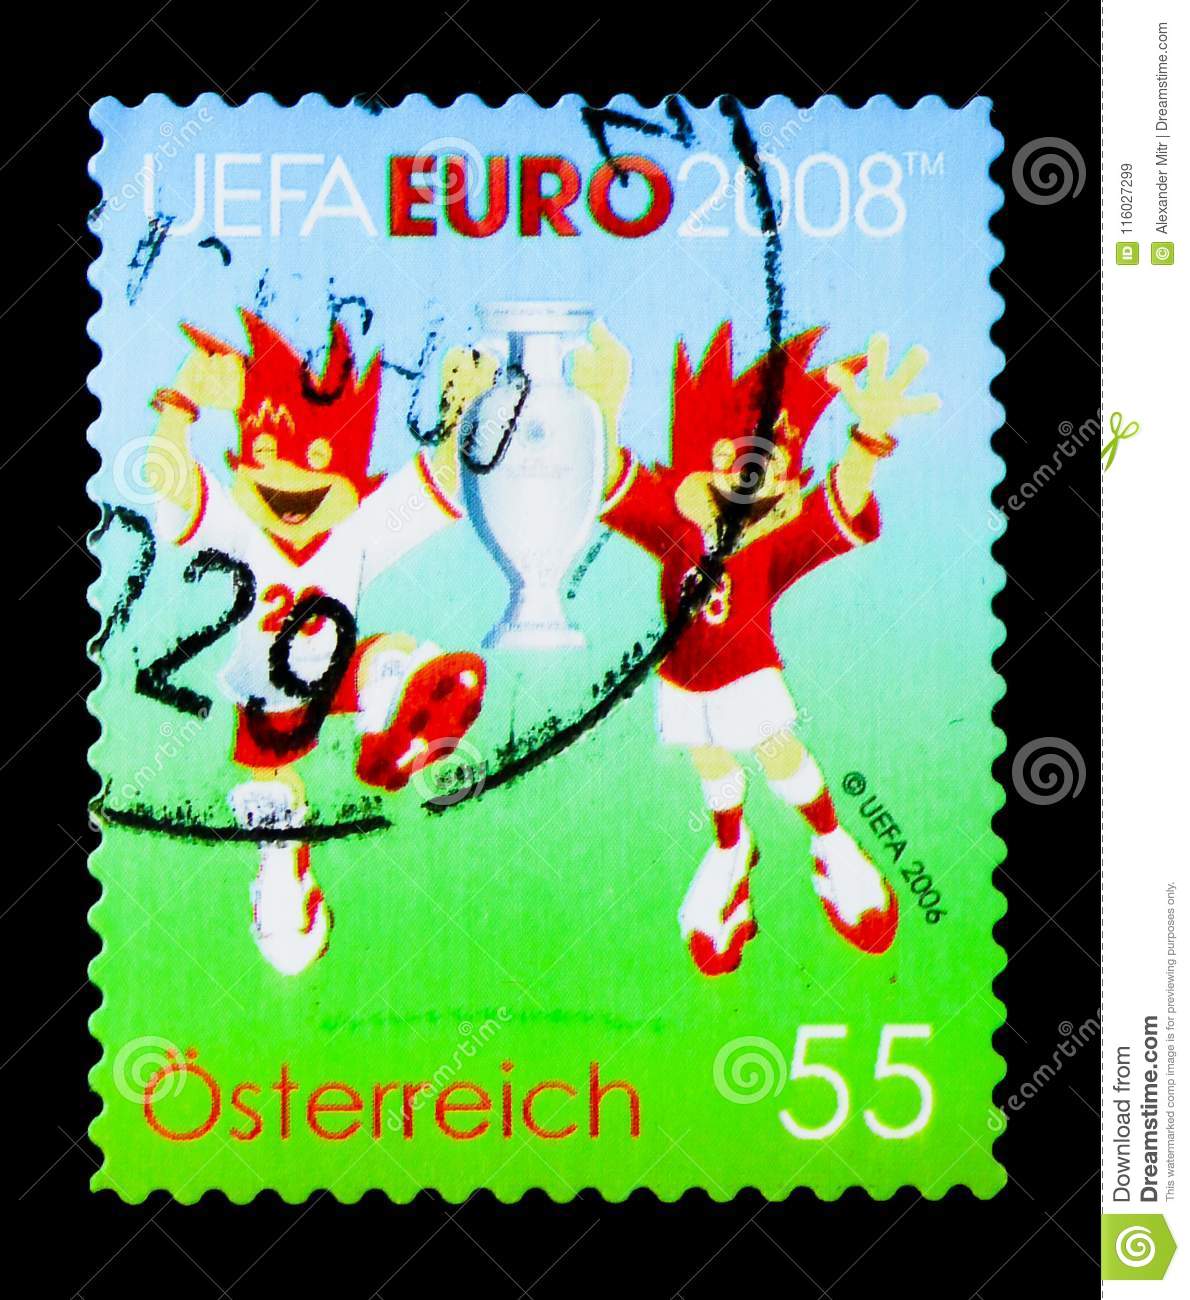 Uefa euro 2008 wikipedia